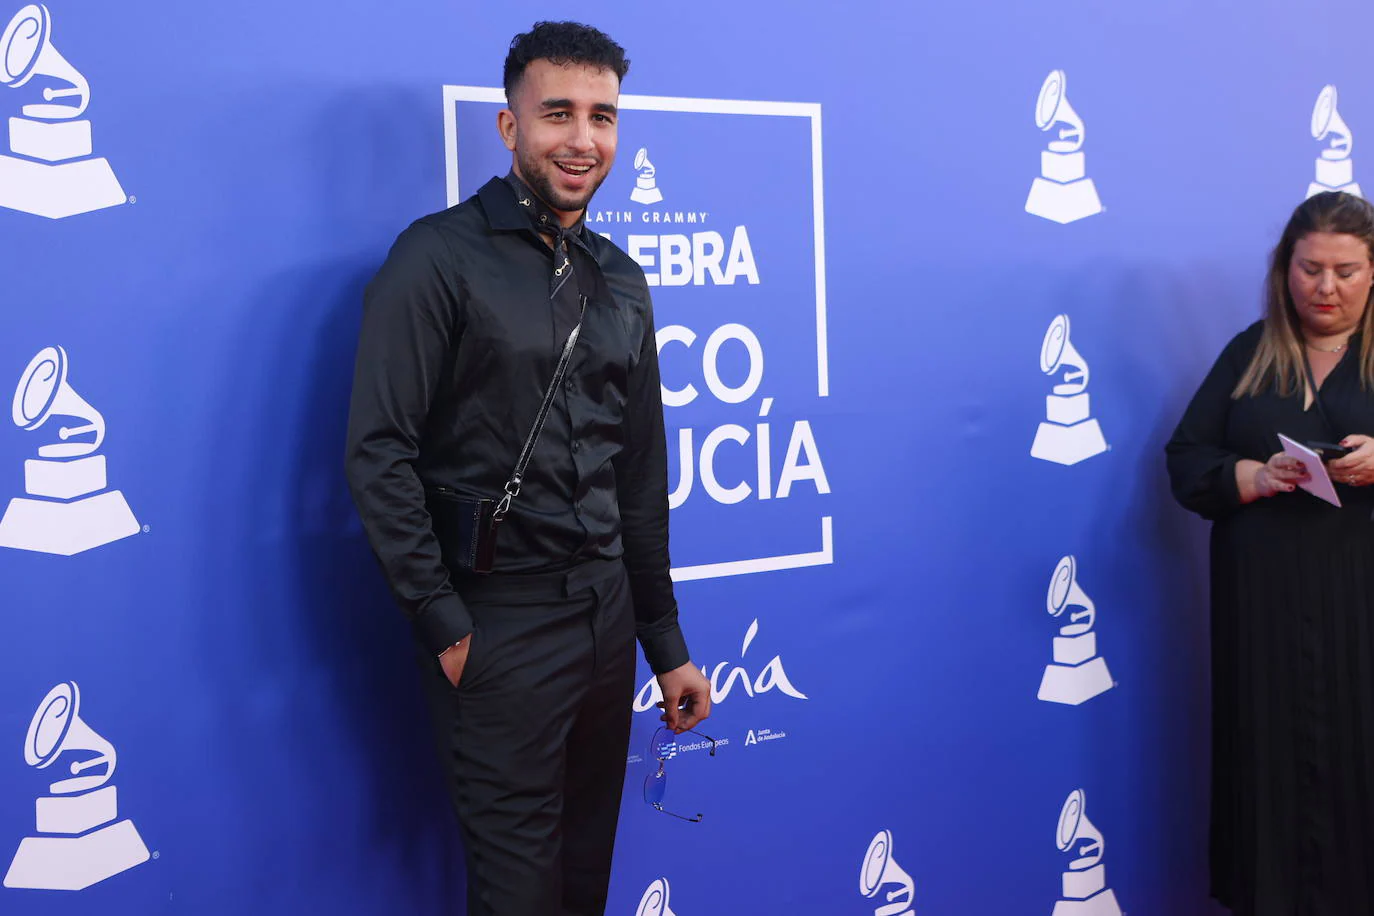 Fotos: la alfombra roja en el concierto homenaje de los Latin Grammy a Paco de Lucía